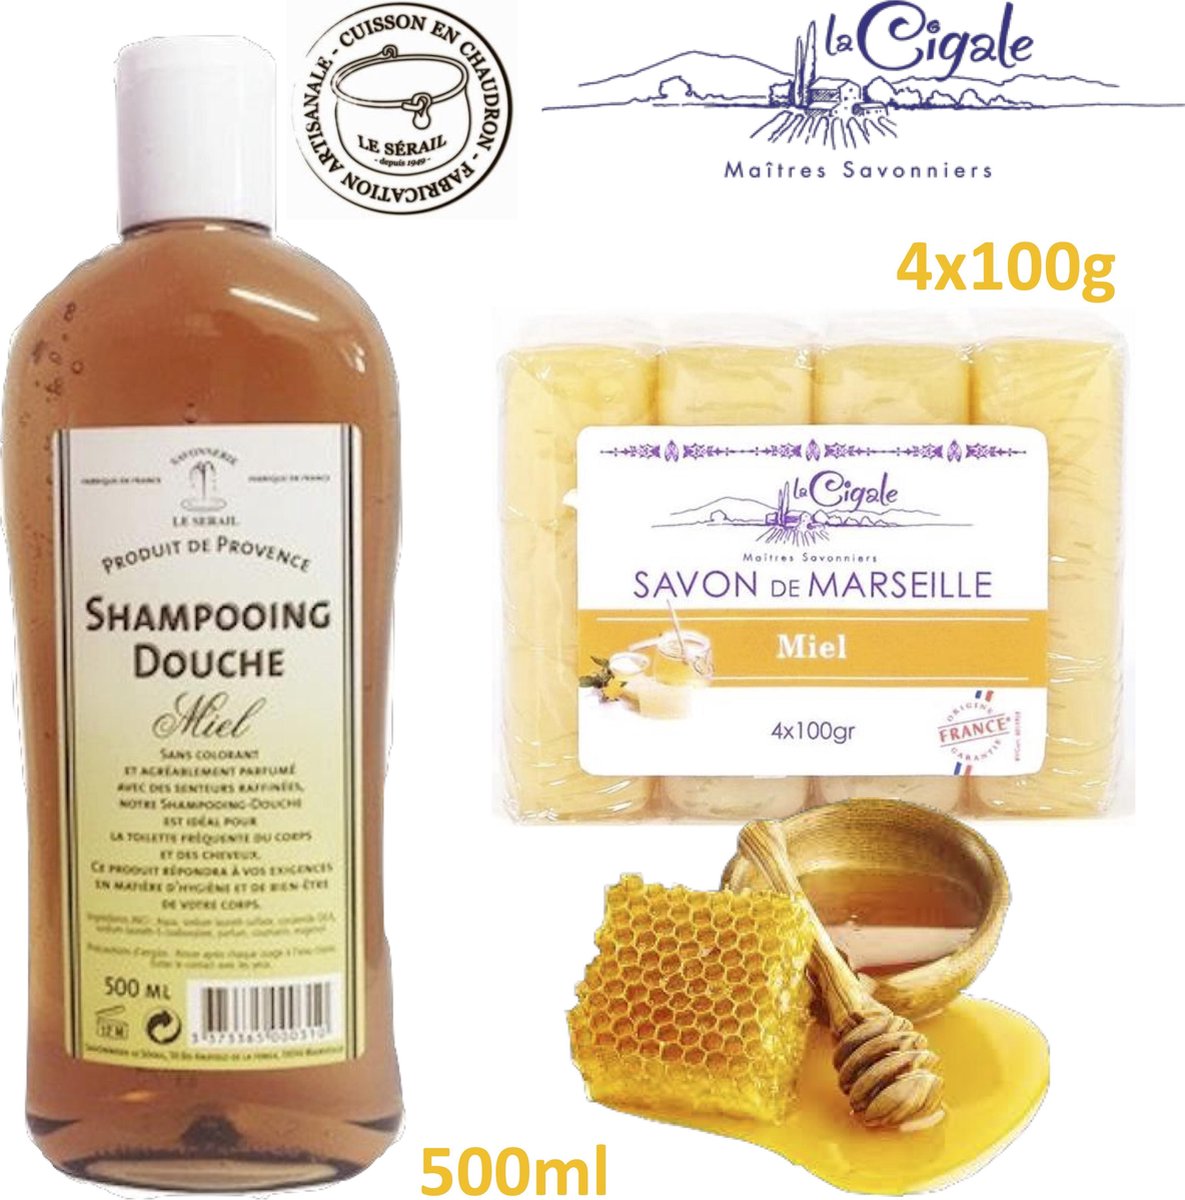 VOORDEEL pakket. HEERLIJK GEURENDE echte honing douche shampoo 500ml van Le Serail. Originele Marseille zeep 4x100g van La Cigale met glycerine en honing. Biologisch ecologisch.